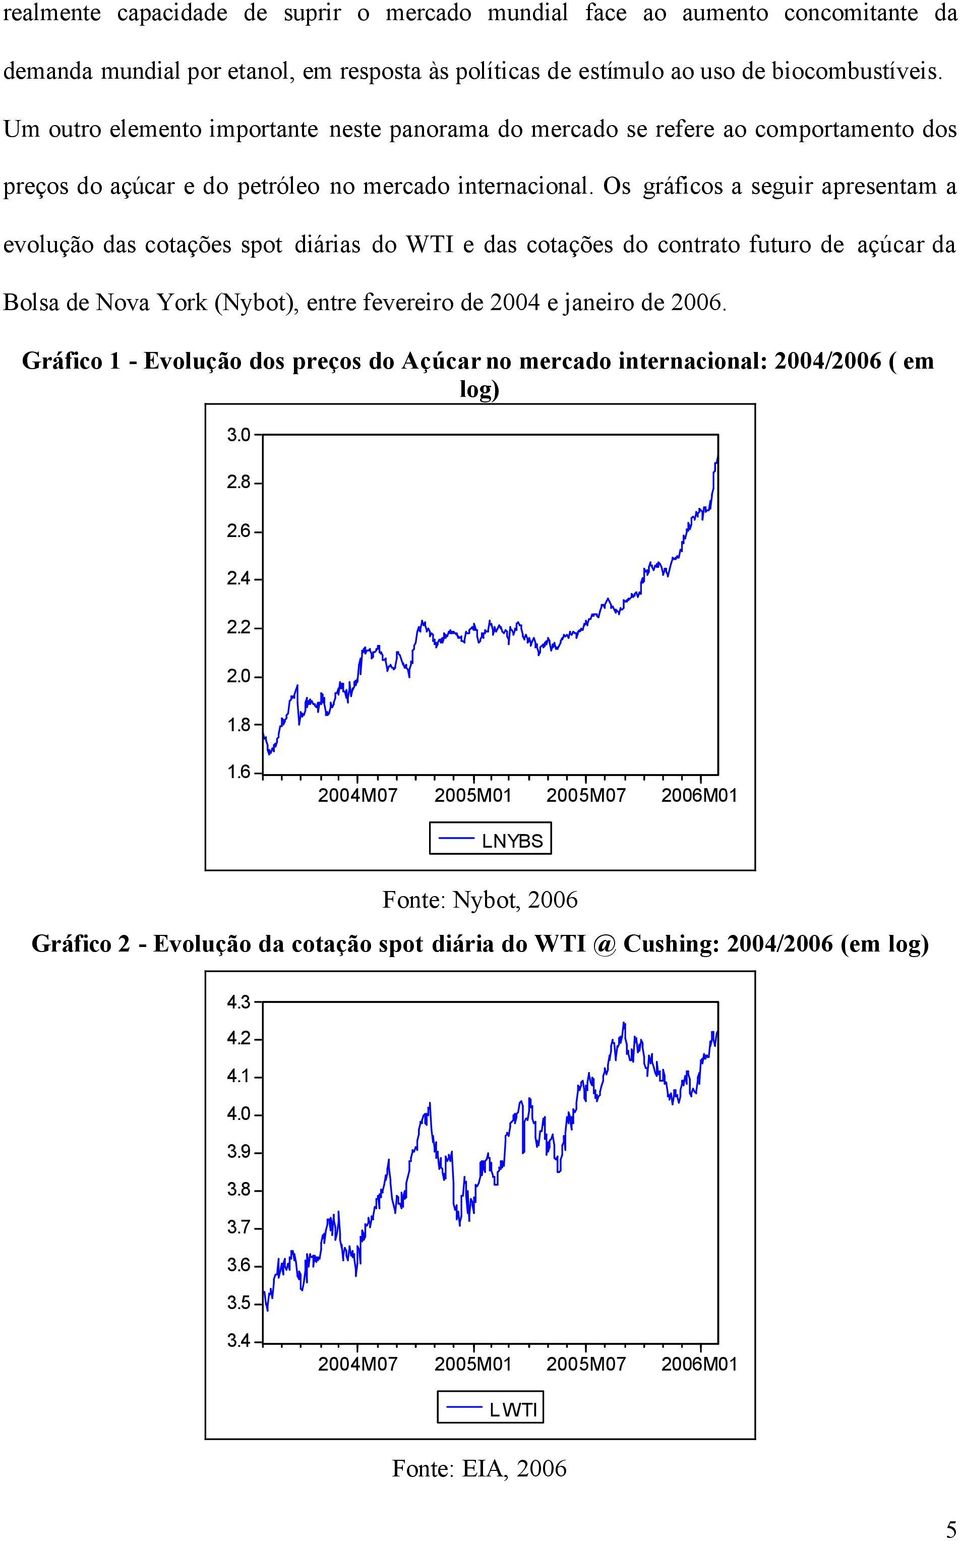 Os gráficos a seguir apresentam a evolução das cotações spot diárias do WTI e das cotações do contrato futuro de açúcar da Bolsa de Nova York (Nybot), entre fevereiro de 2004 e janeiro de 2006.